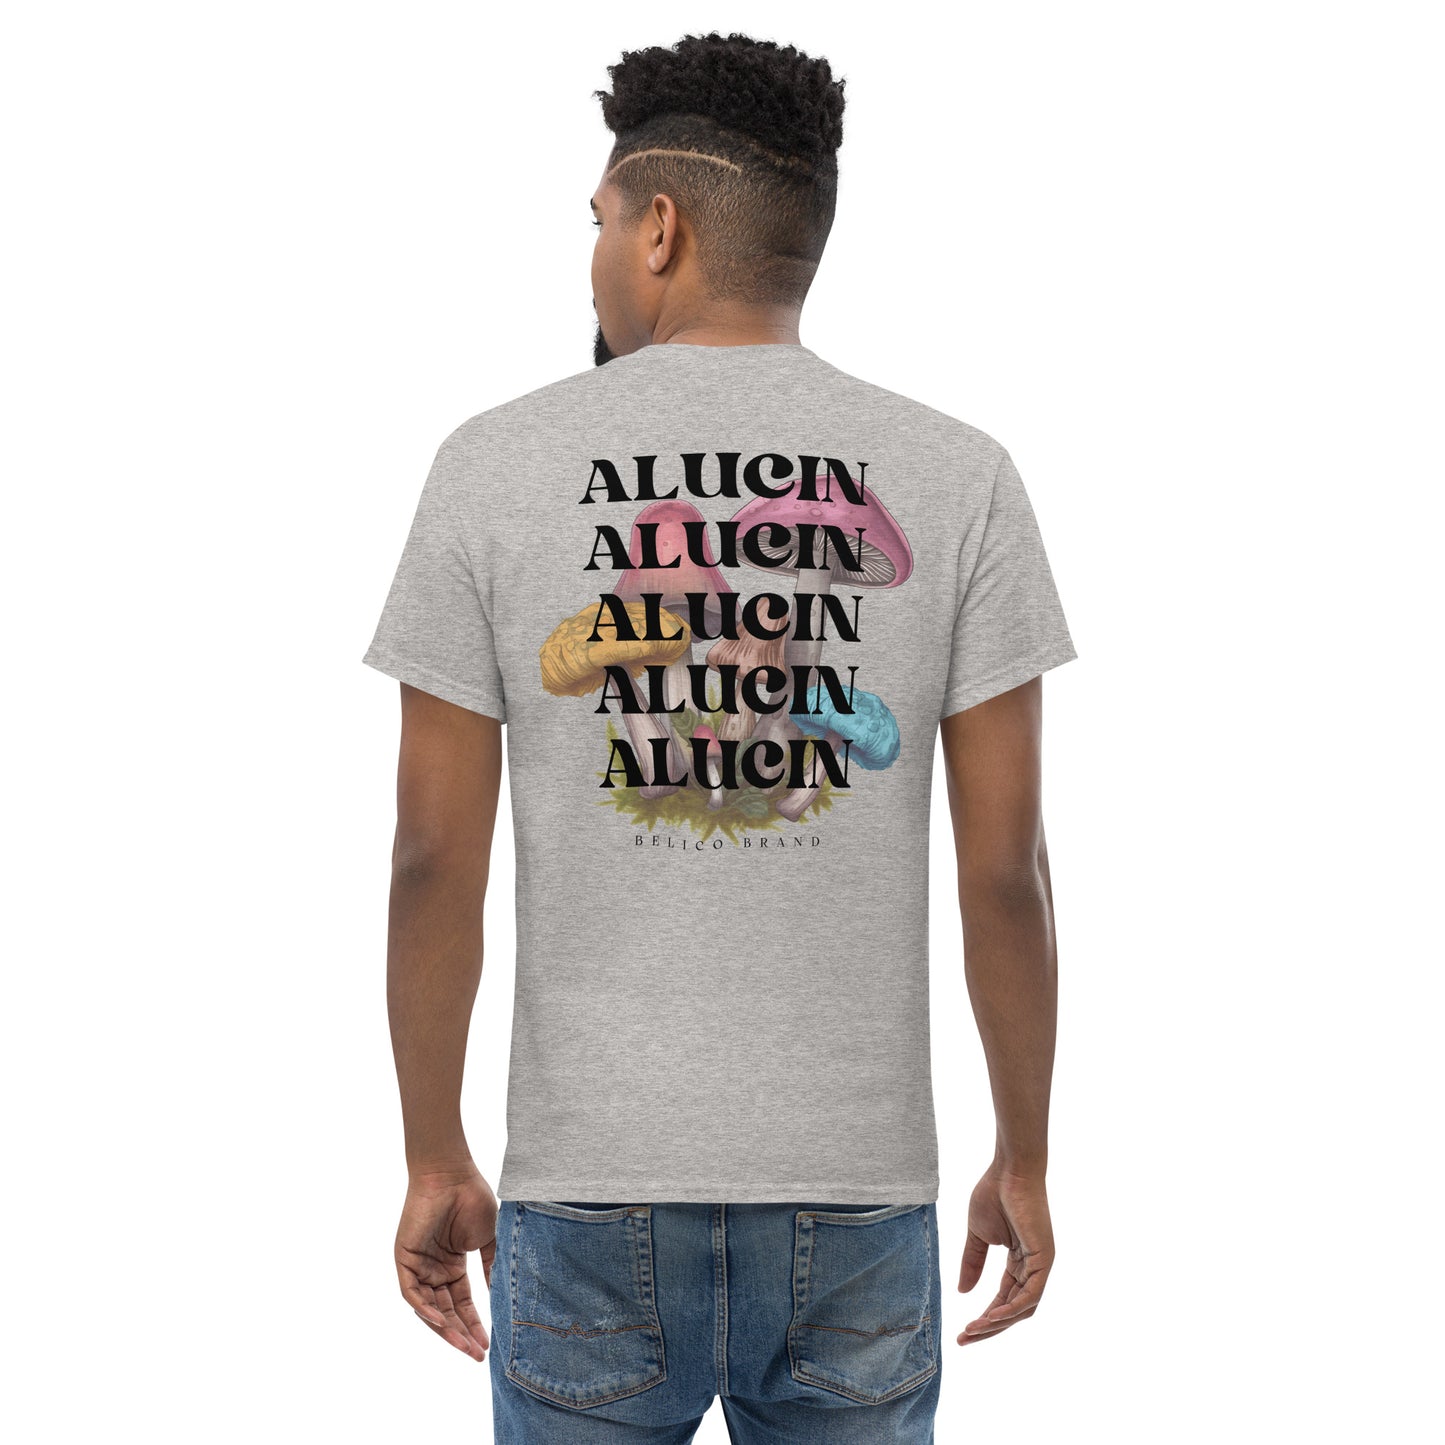 El Alucin T-Shirt